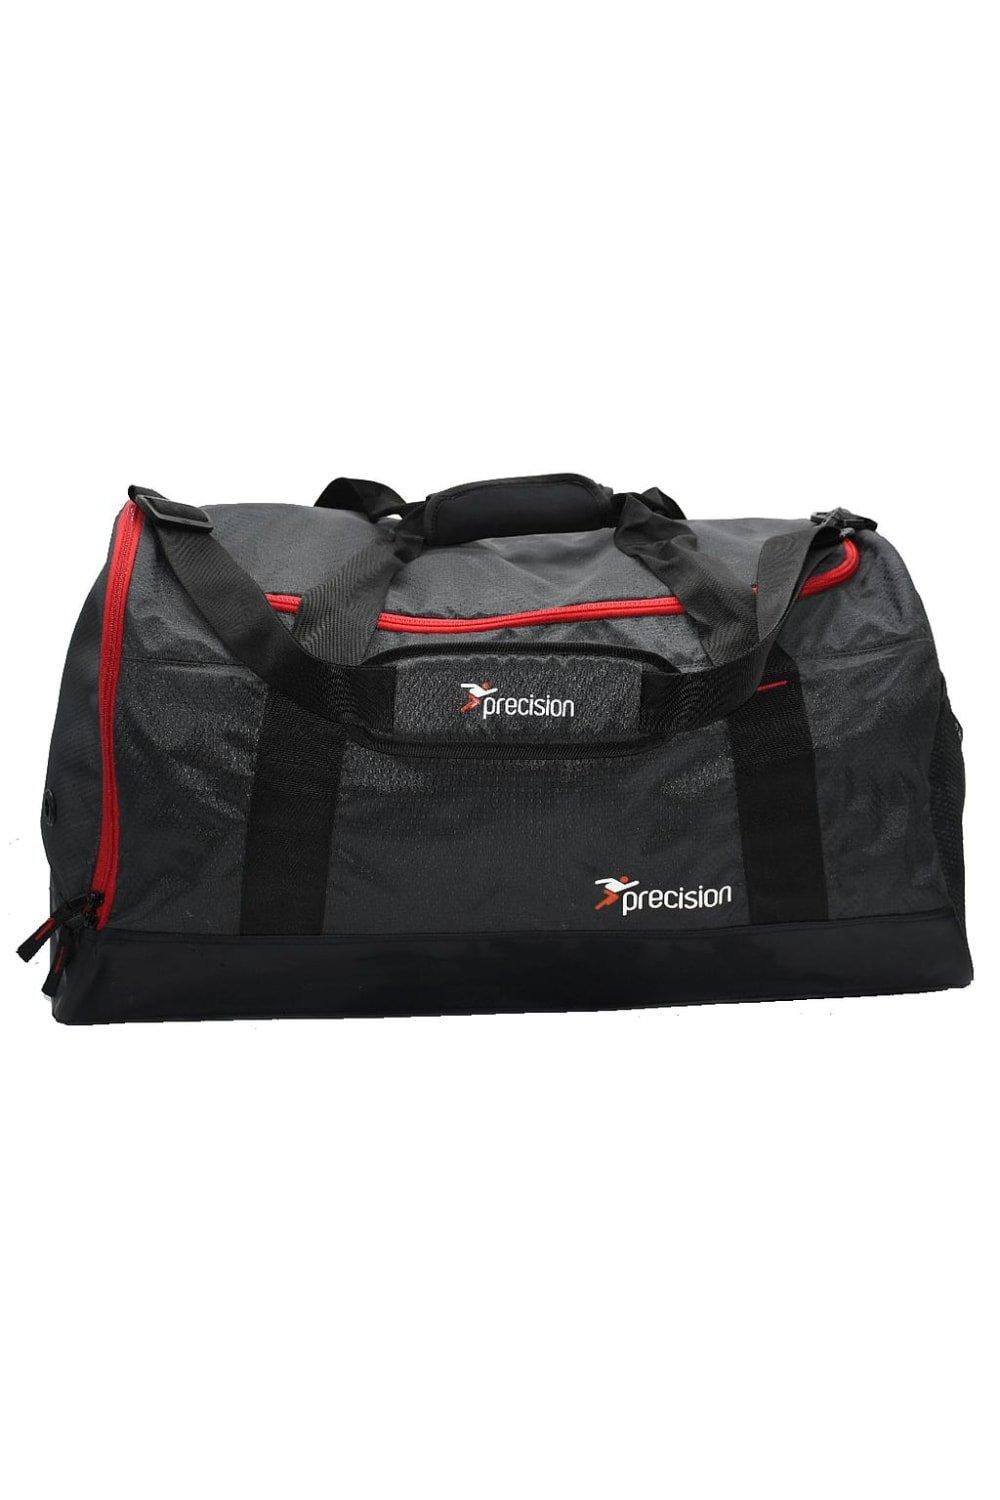 Дорожная сумка Pro Hx Team Precision, черный цена и фото